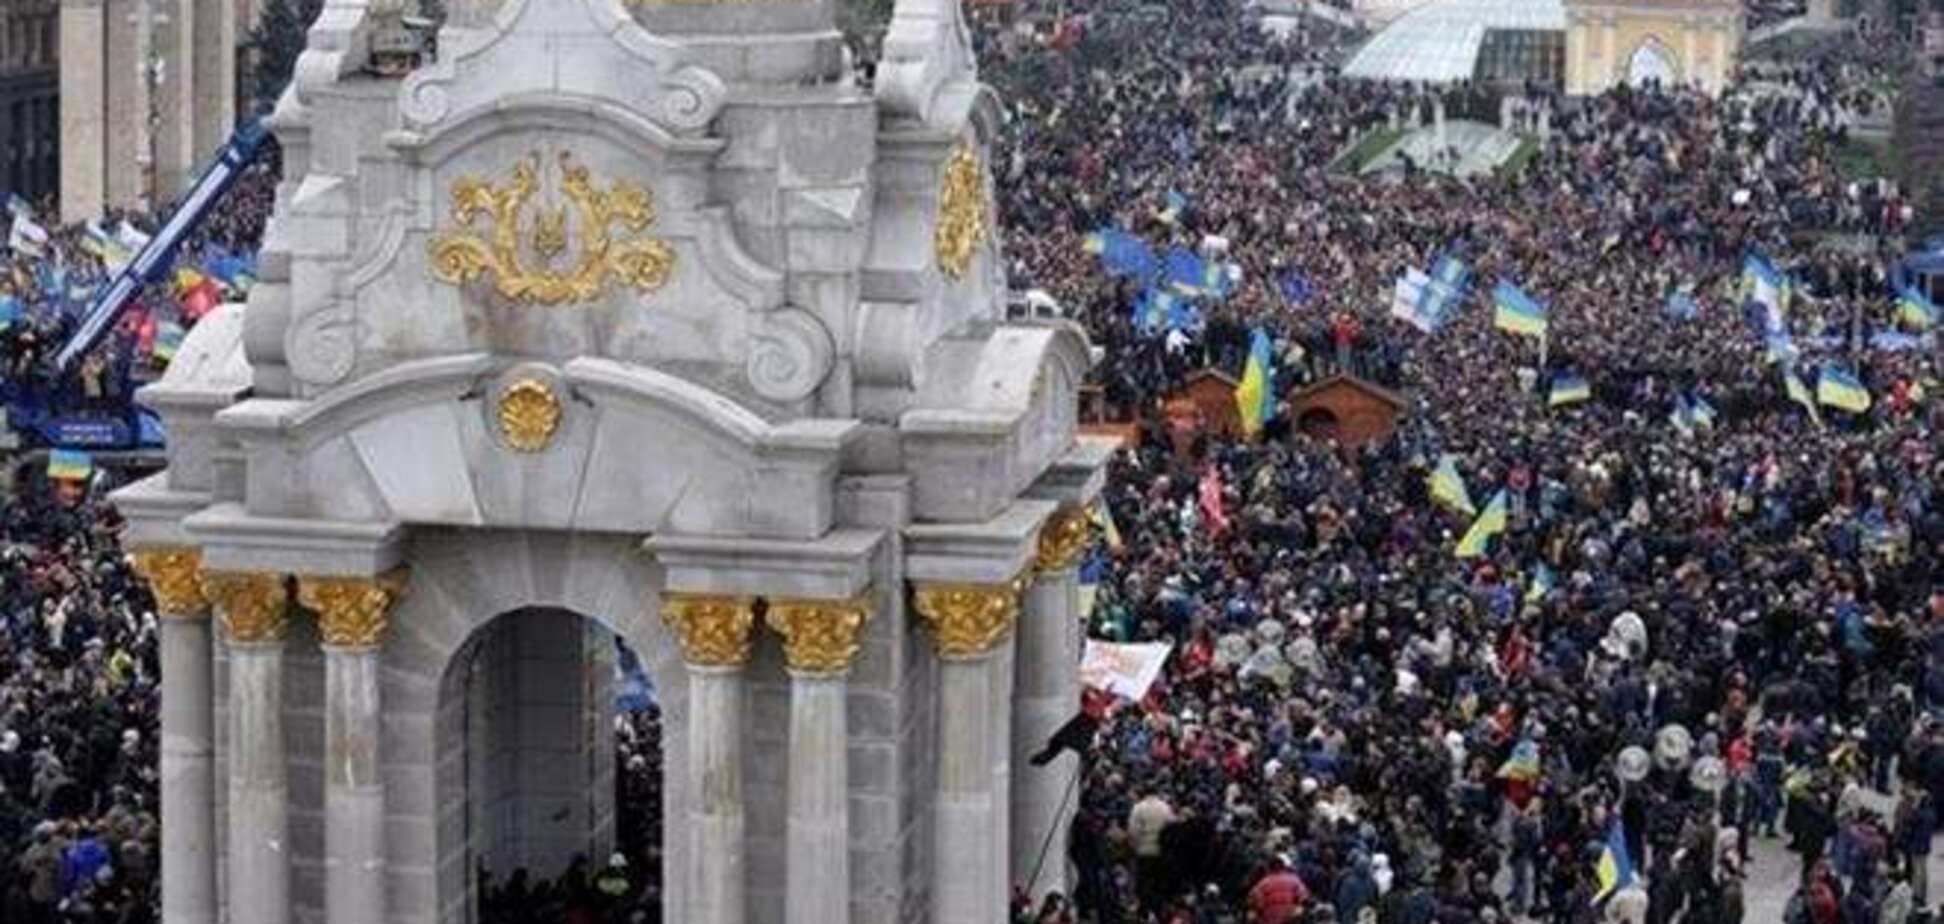 Le Monde: Европа должна поддержать стремление Киева к демократии